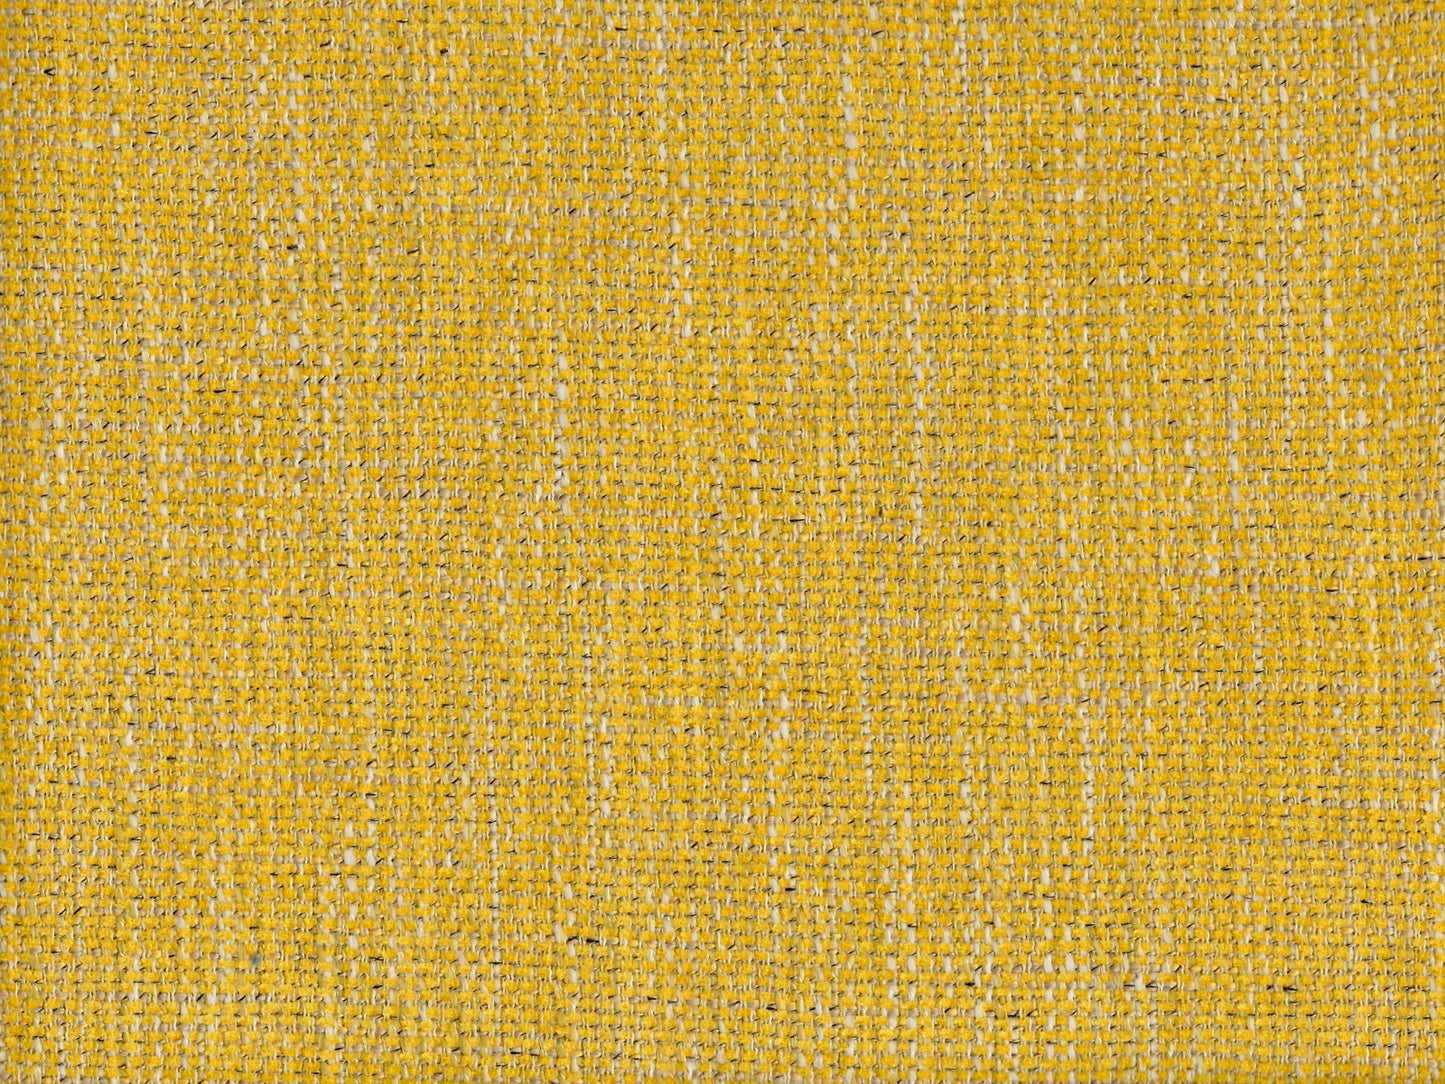 Ferrara Fabric Samples - Rydan Interiors